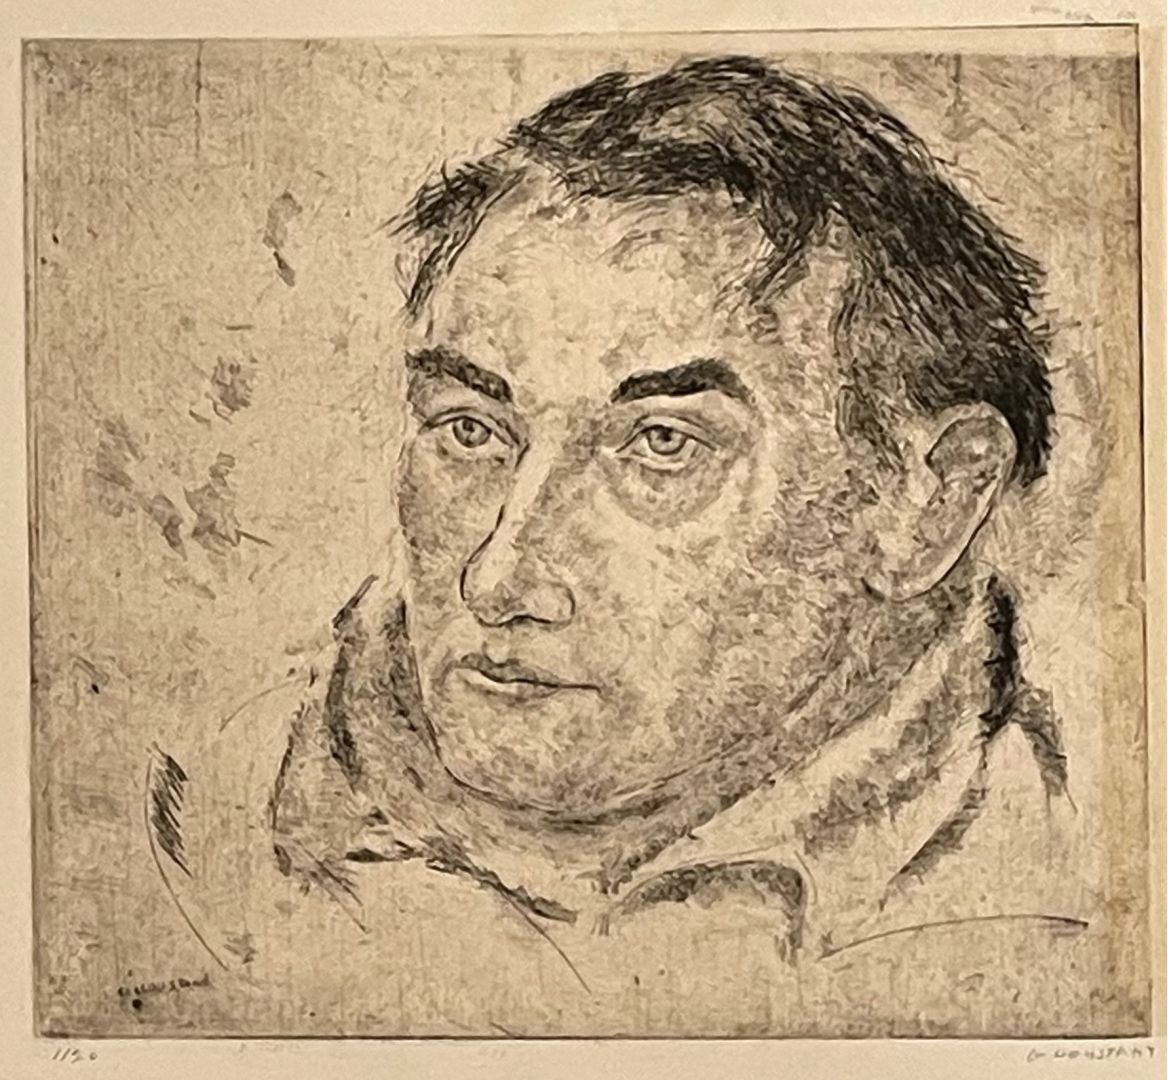 PORTRAIT OF WILLIAM ZORACH